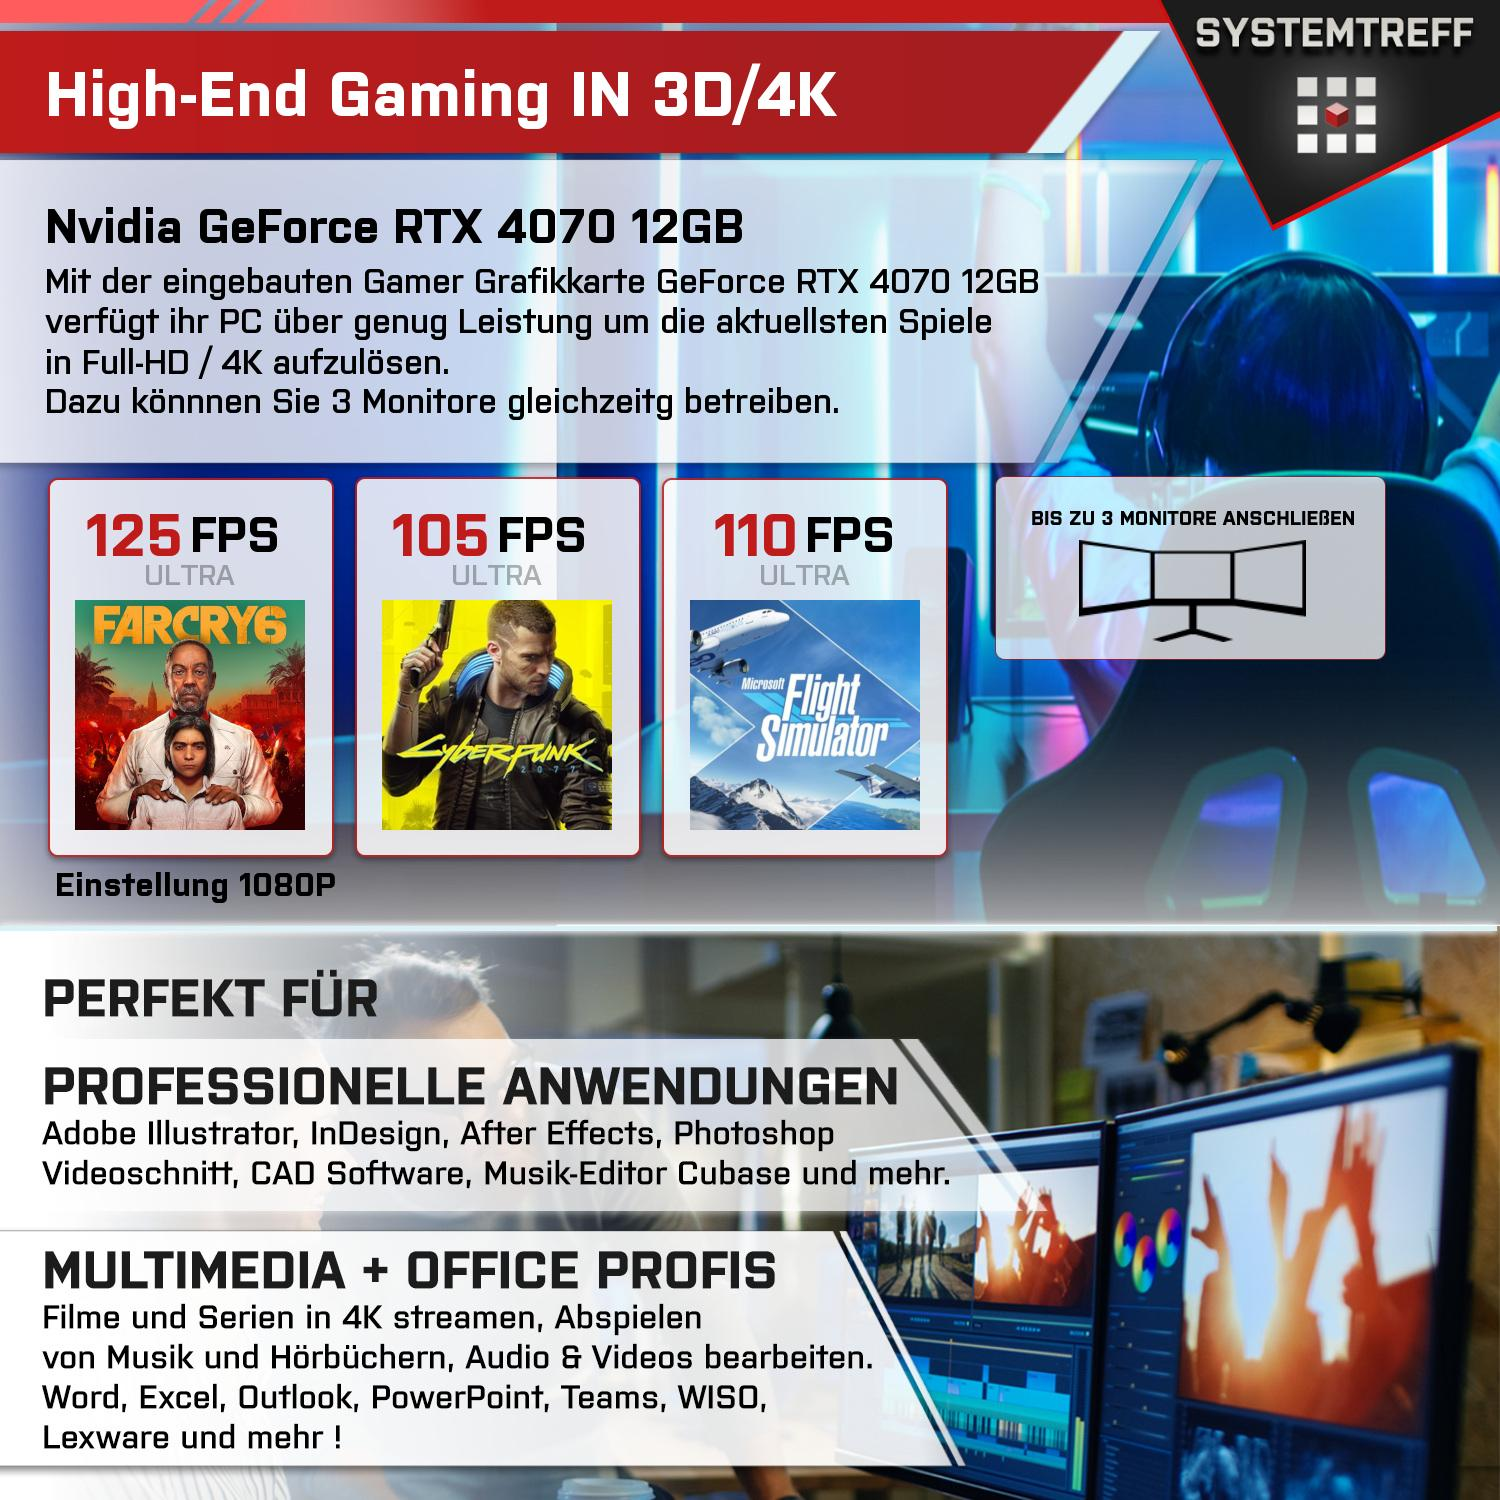 SYSTEMTREFF Gaming Komplett AMD Prozessor, mit GB Komplett Ryzen GB GB 12 1000 9 5900X RTX 12GB GeForce mSSD, PC RAM, 4070 Nvidia 5900X, GDDR6, 32